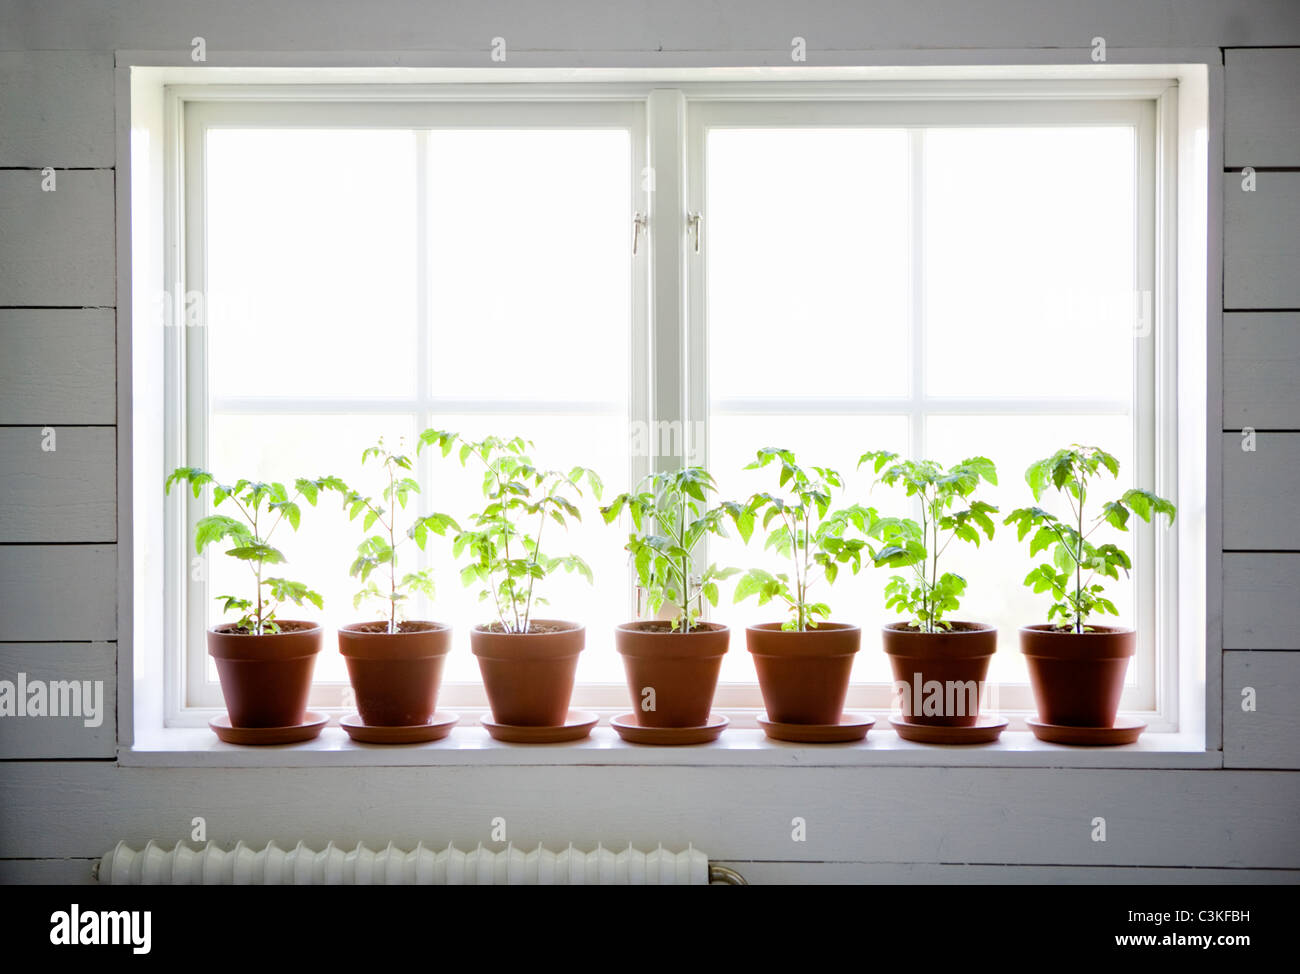 Rangée de plantes en pot sur le rebord de fenêtre Banque D'Images